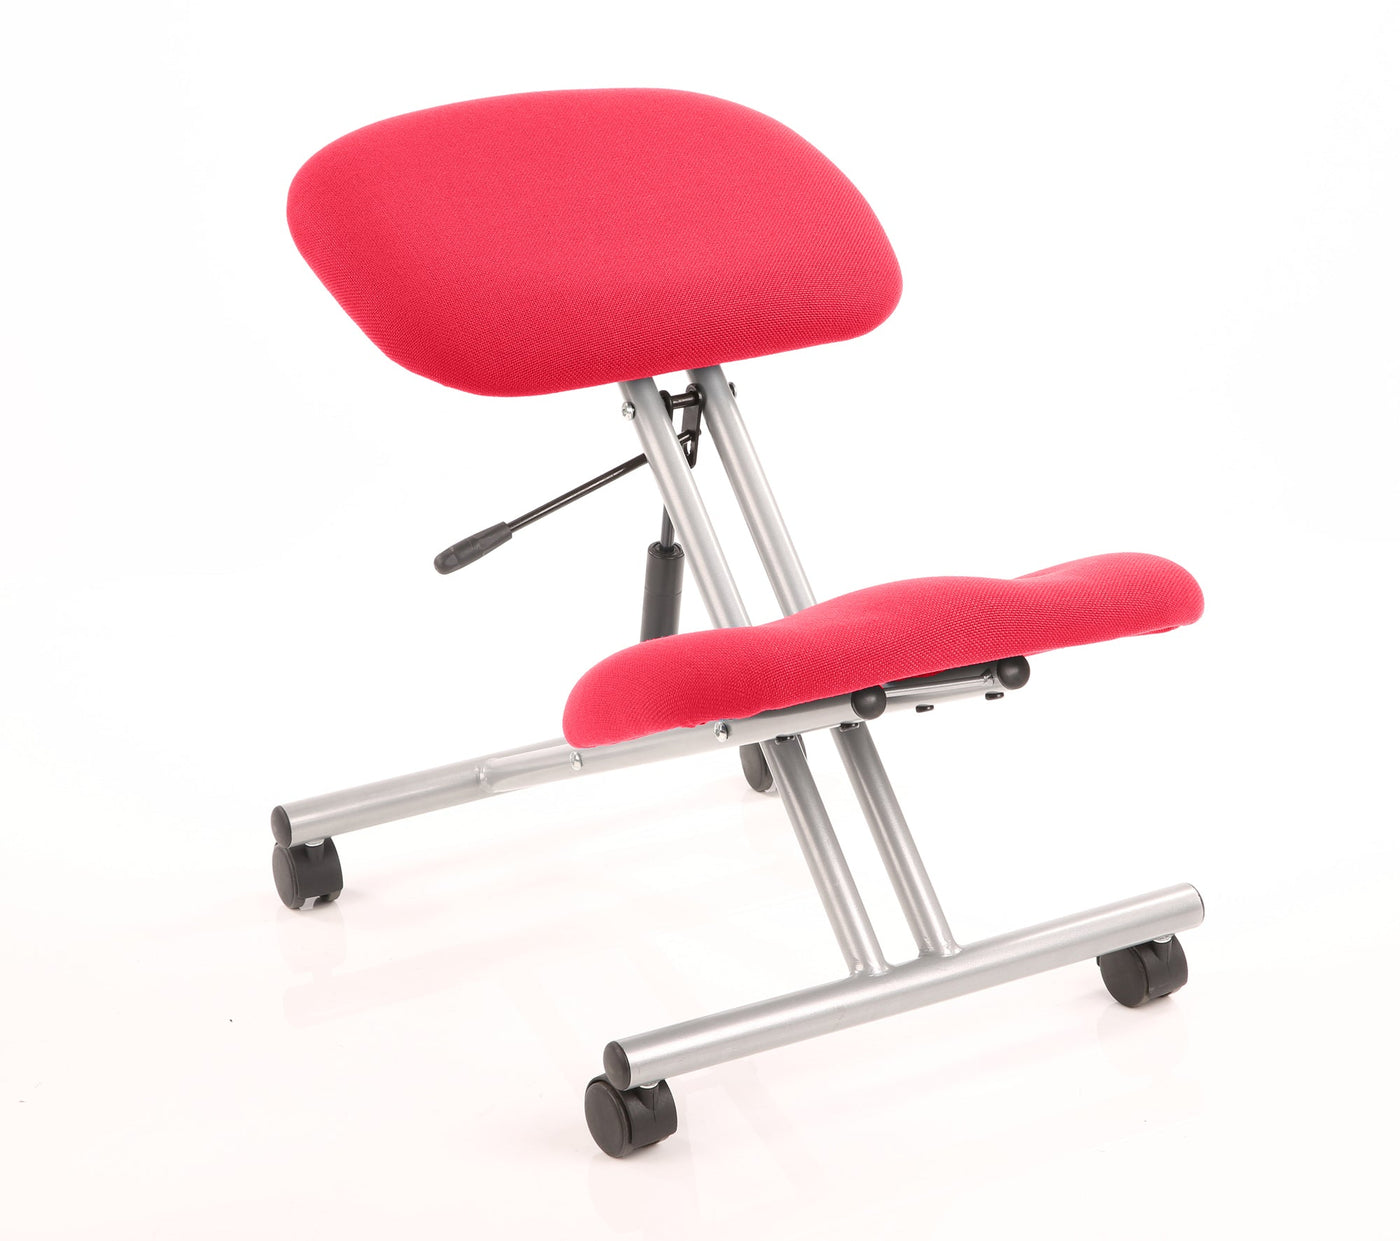 Kneeling Stool | Home Office Furniture | Height Adjustable Knee Stool